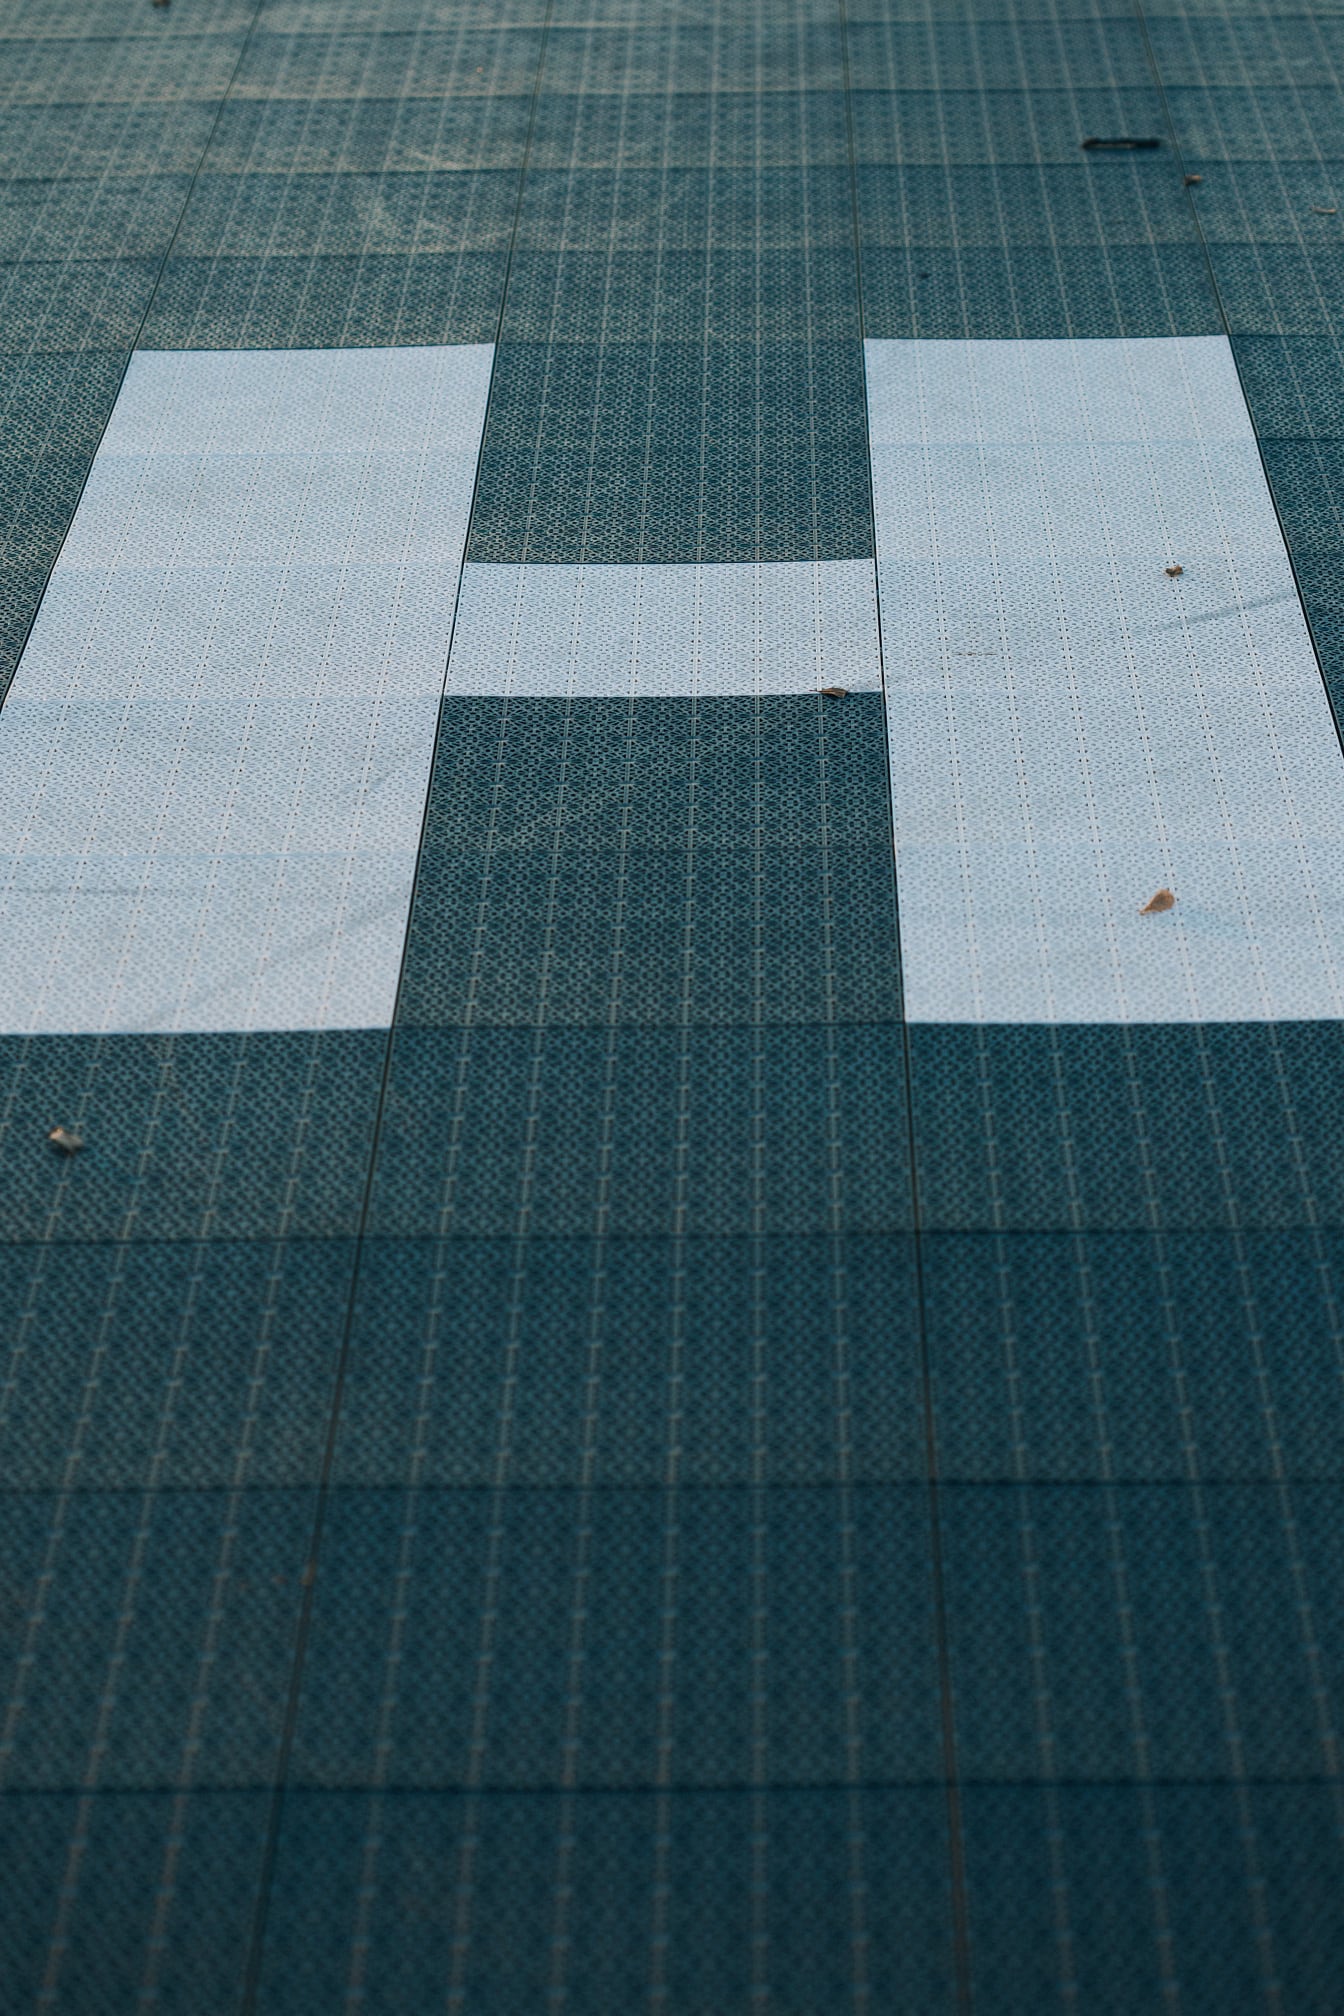 Textura da superfície plástica do piso com padrão quadrado e com letra H